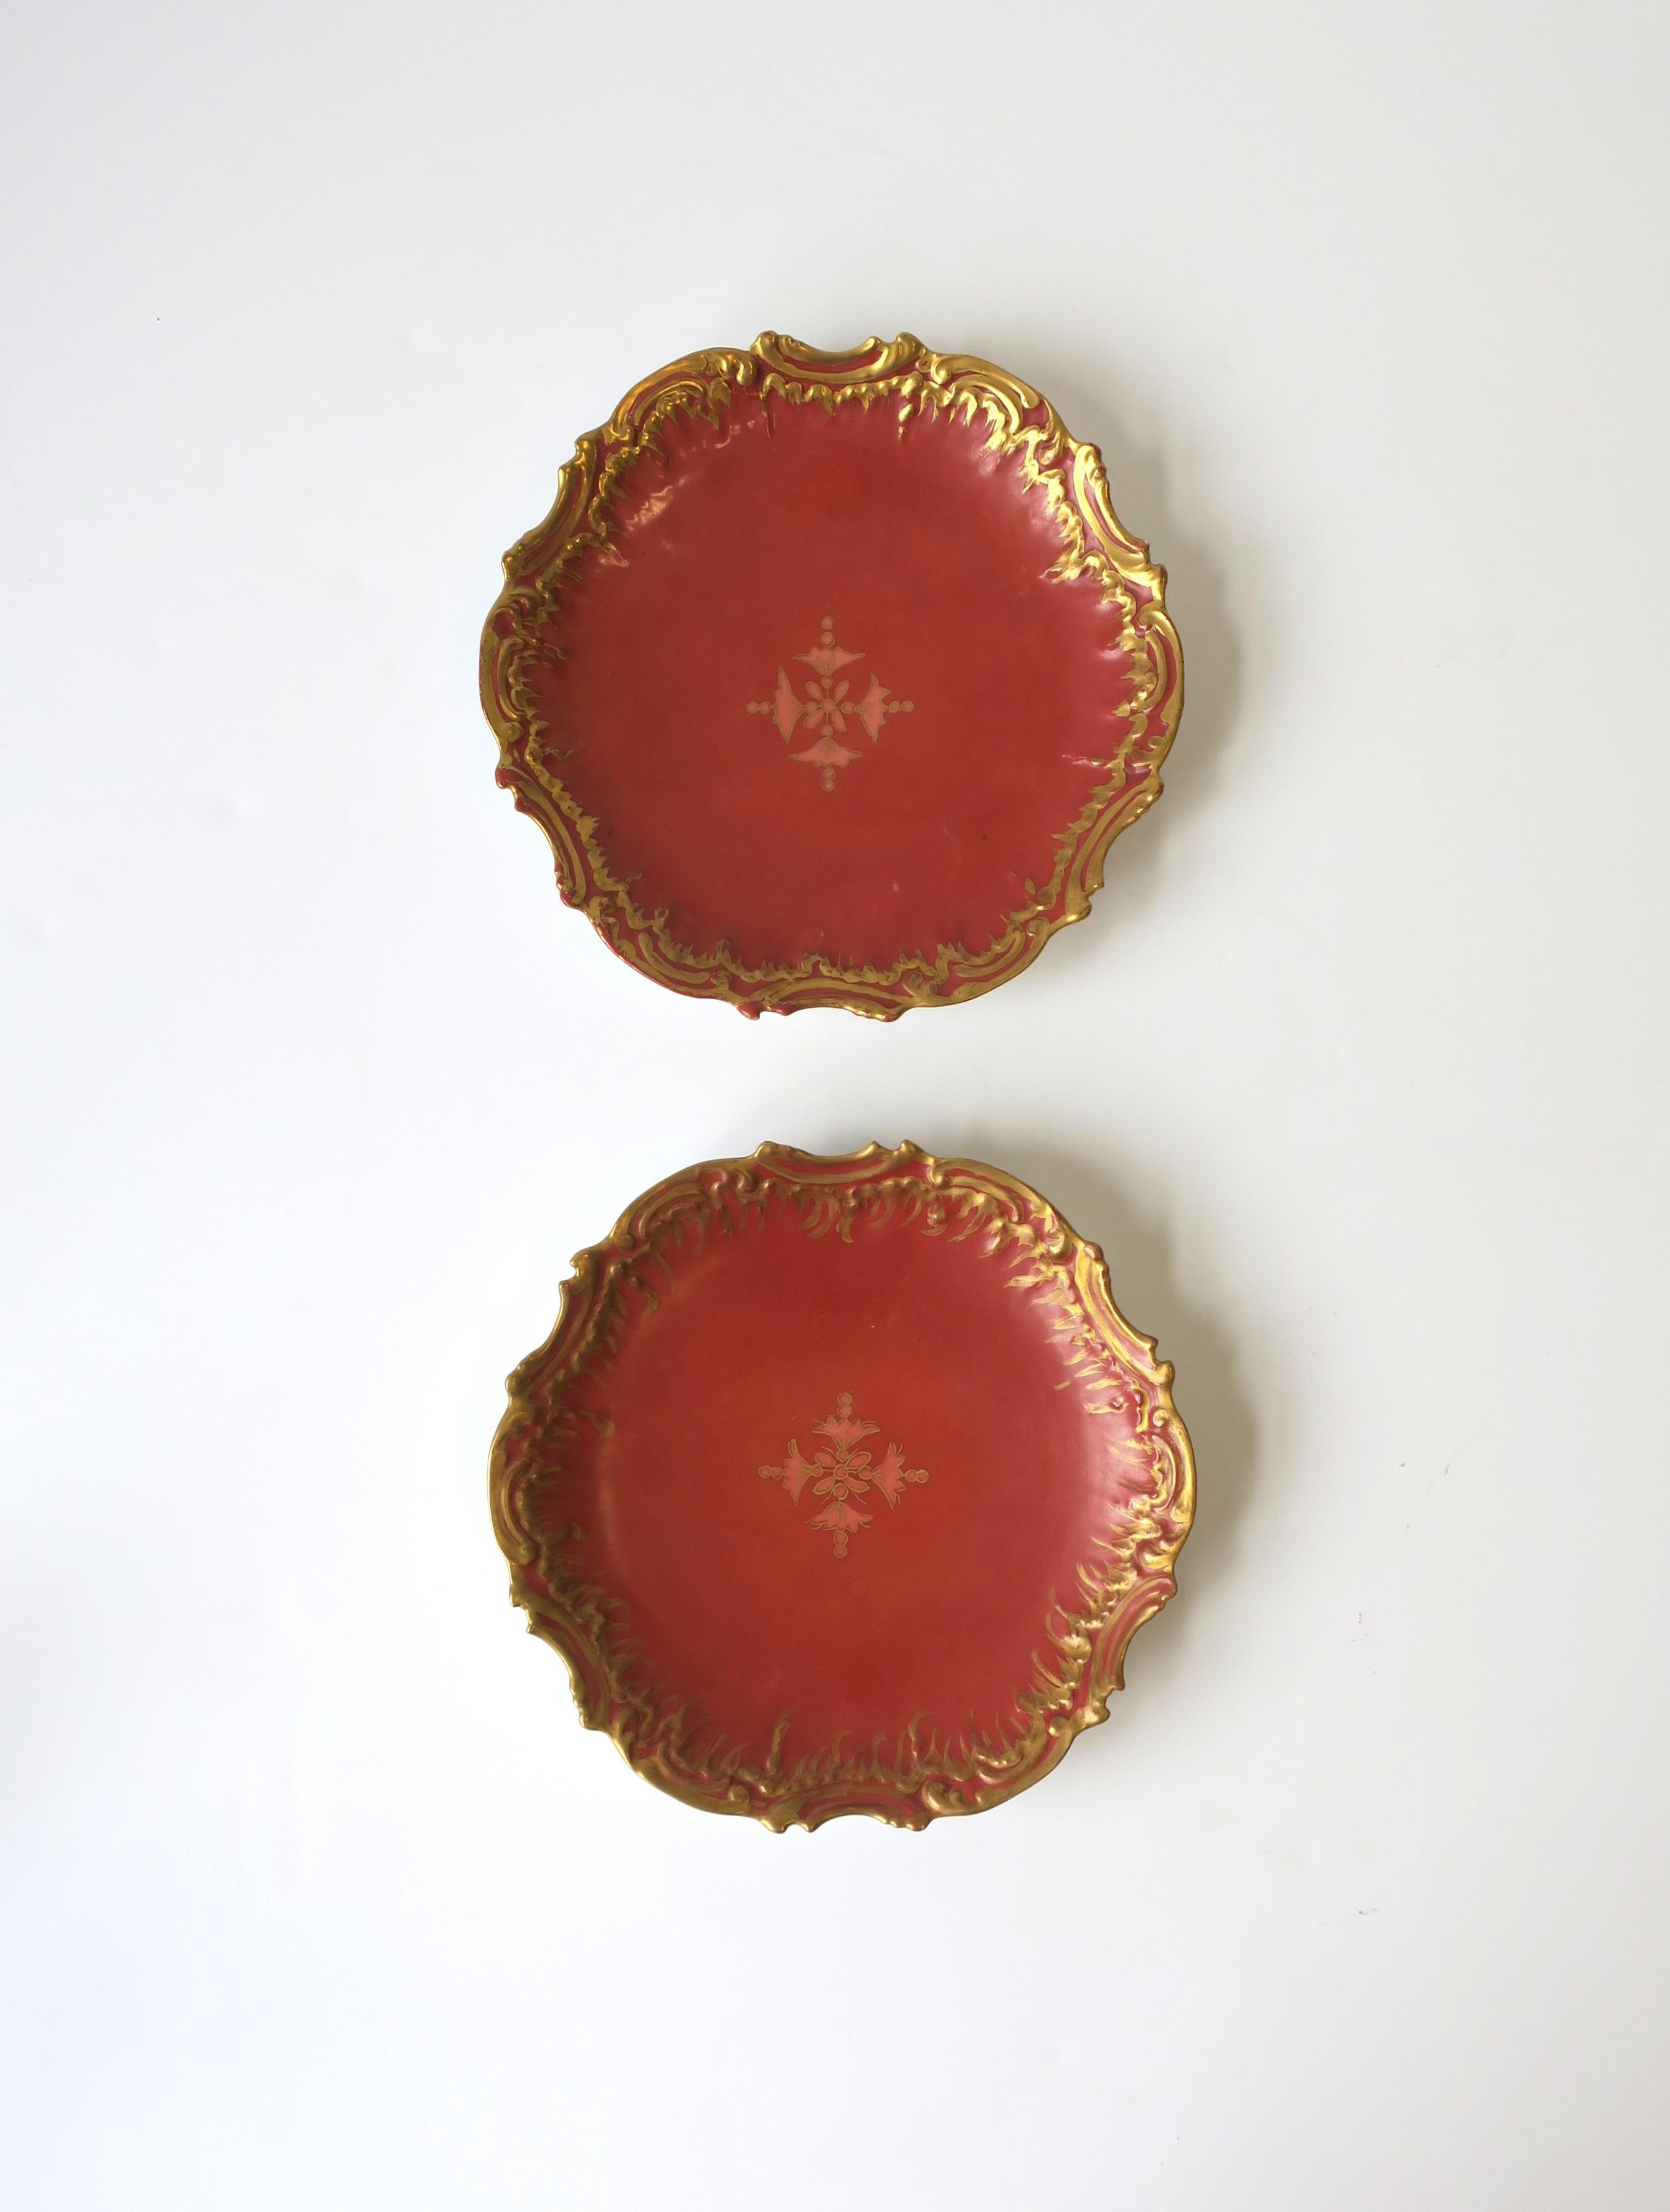 Une belle paire d'assiettes anciennes en porcelaine française de Limoges en terre cuite, rose et or, vers le 19e siècle, France. Les assiettes sont principalement de couleur terracotta avec un motif central rose œillet, et un bord décoratif doré